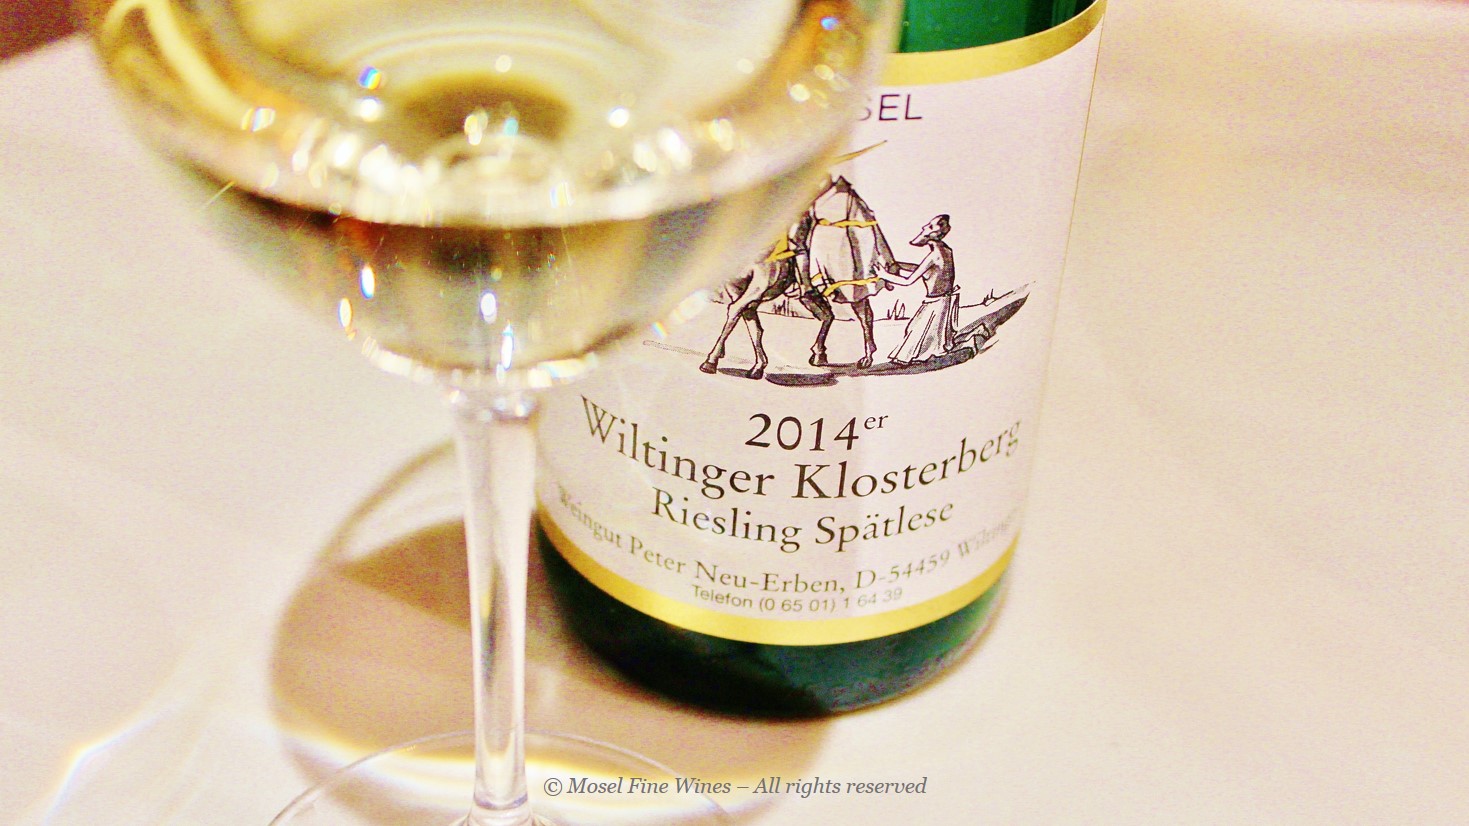 Weingut Neu-Erben | Wiltinger Klosterberg Spätlese 2014